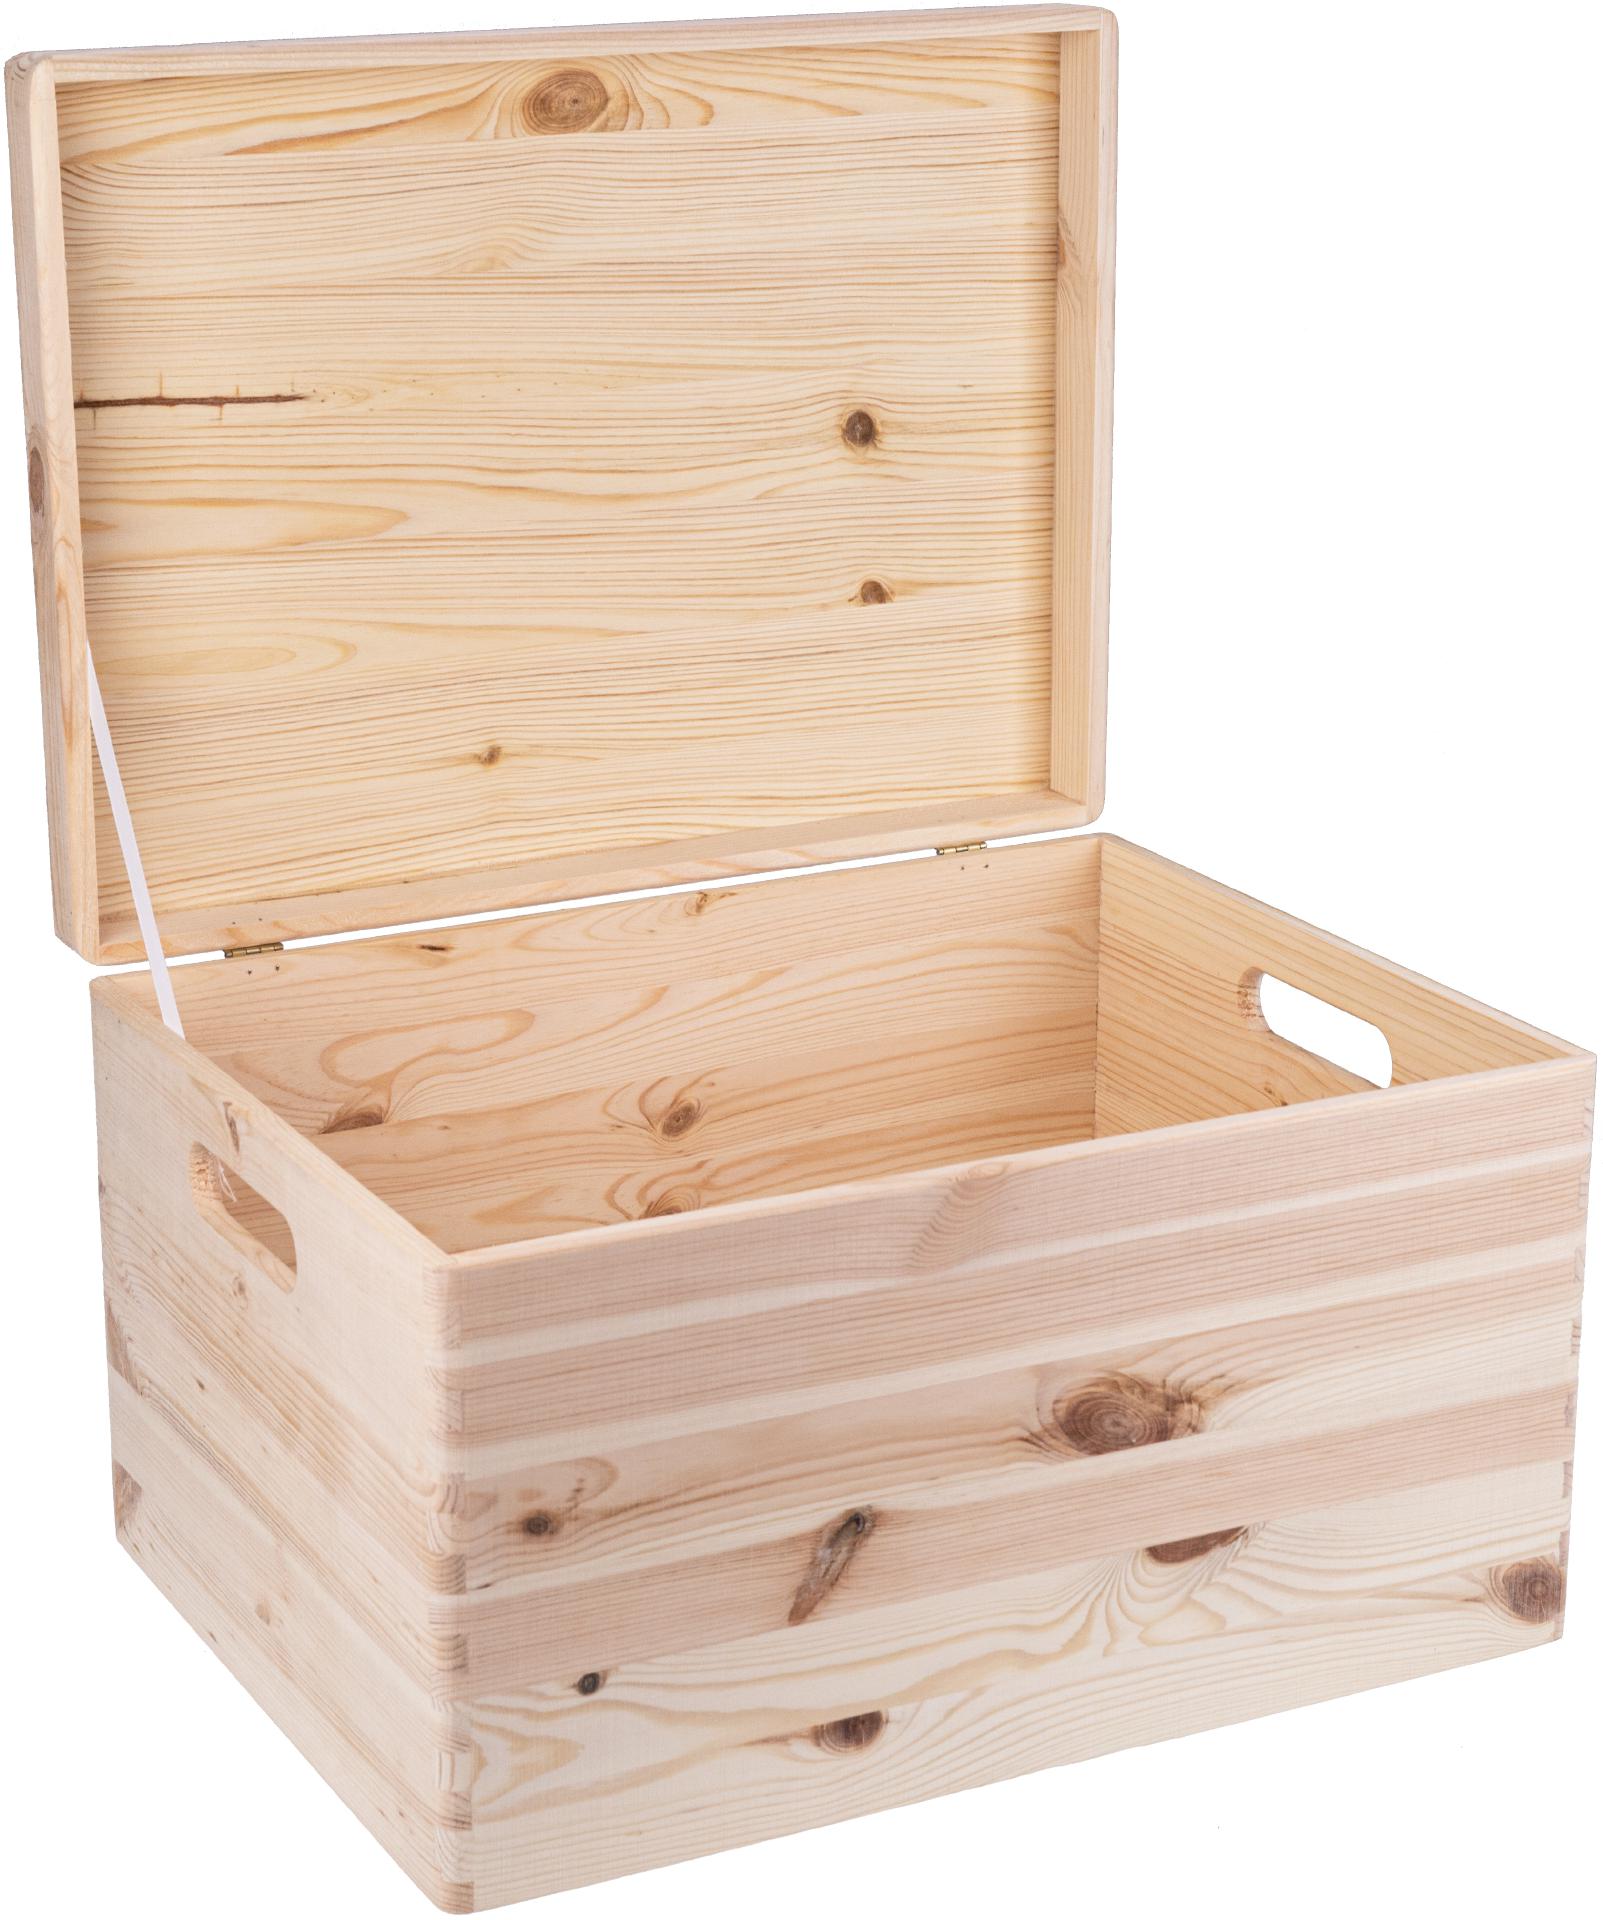 GroÃŸe Holz Kiste mit Massivholz Klappdeckel und Griff